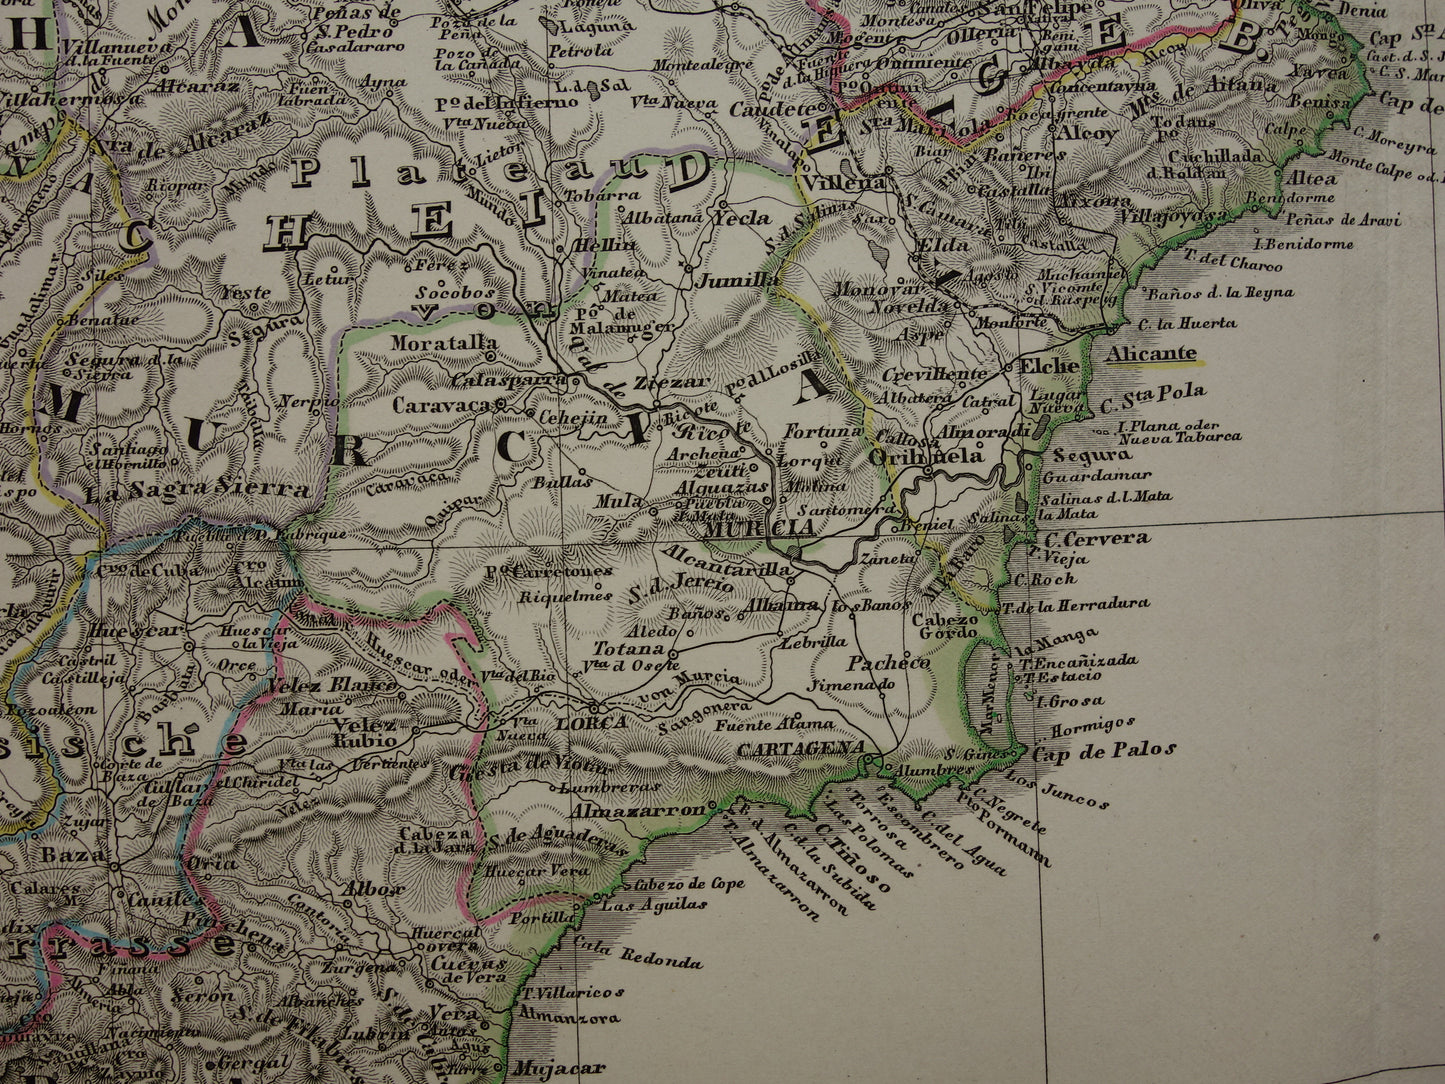 SPANJE Grote oude kaart van Spanje en Portugal 1860 originele antieke landkaart poster 73x89 cm met jaartal